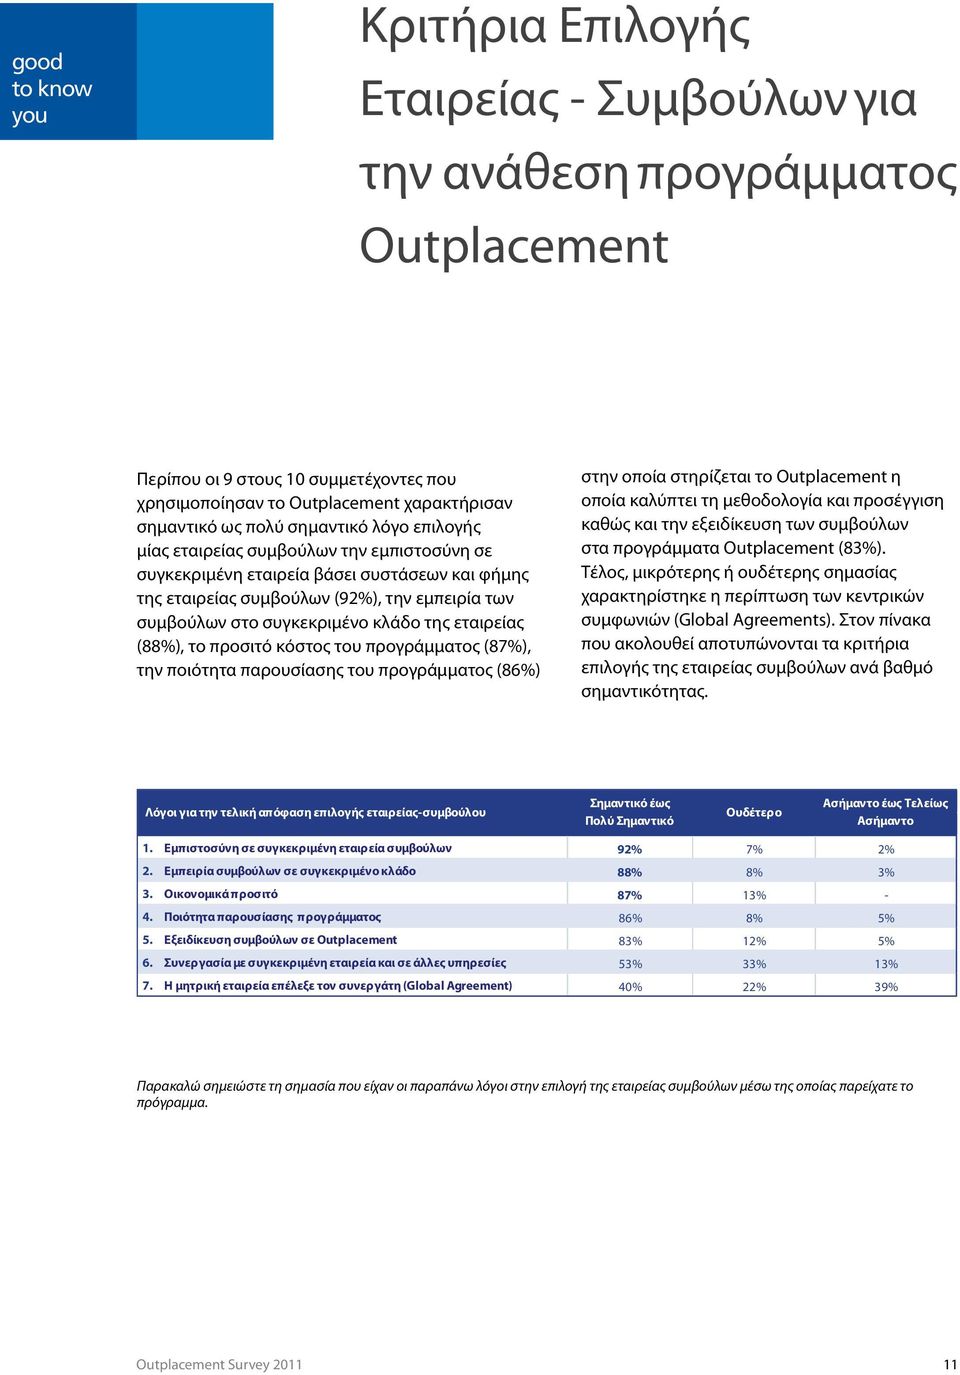 κλάδο της εταιρείας (88%), το προσιτό κόστος του προγράμματος (87%), την ποιότητα παρουσίασης του προγράμματος (86%) στην οποία στηρίζεται το Outplacement η οποία καλύπτει τη μεθοδολογία και